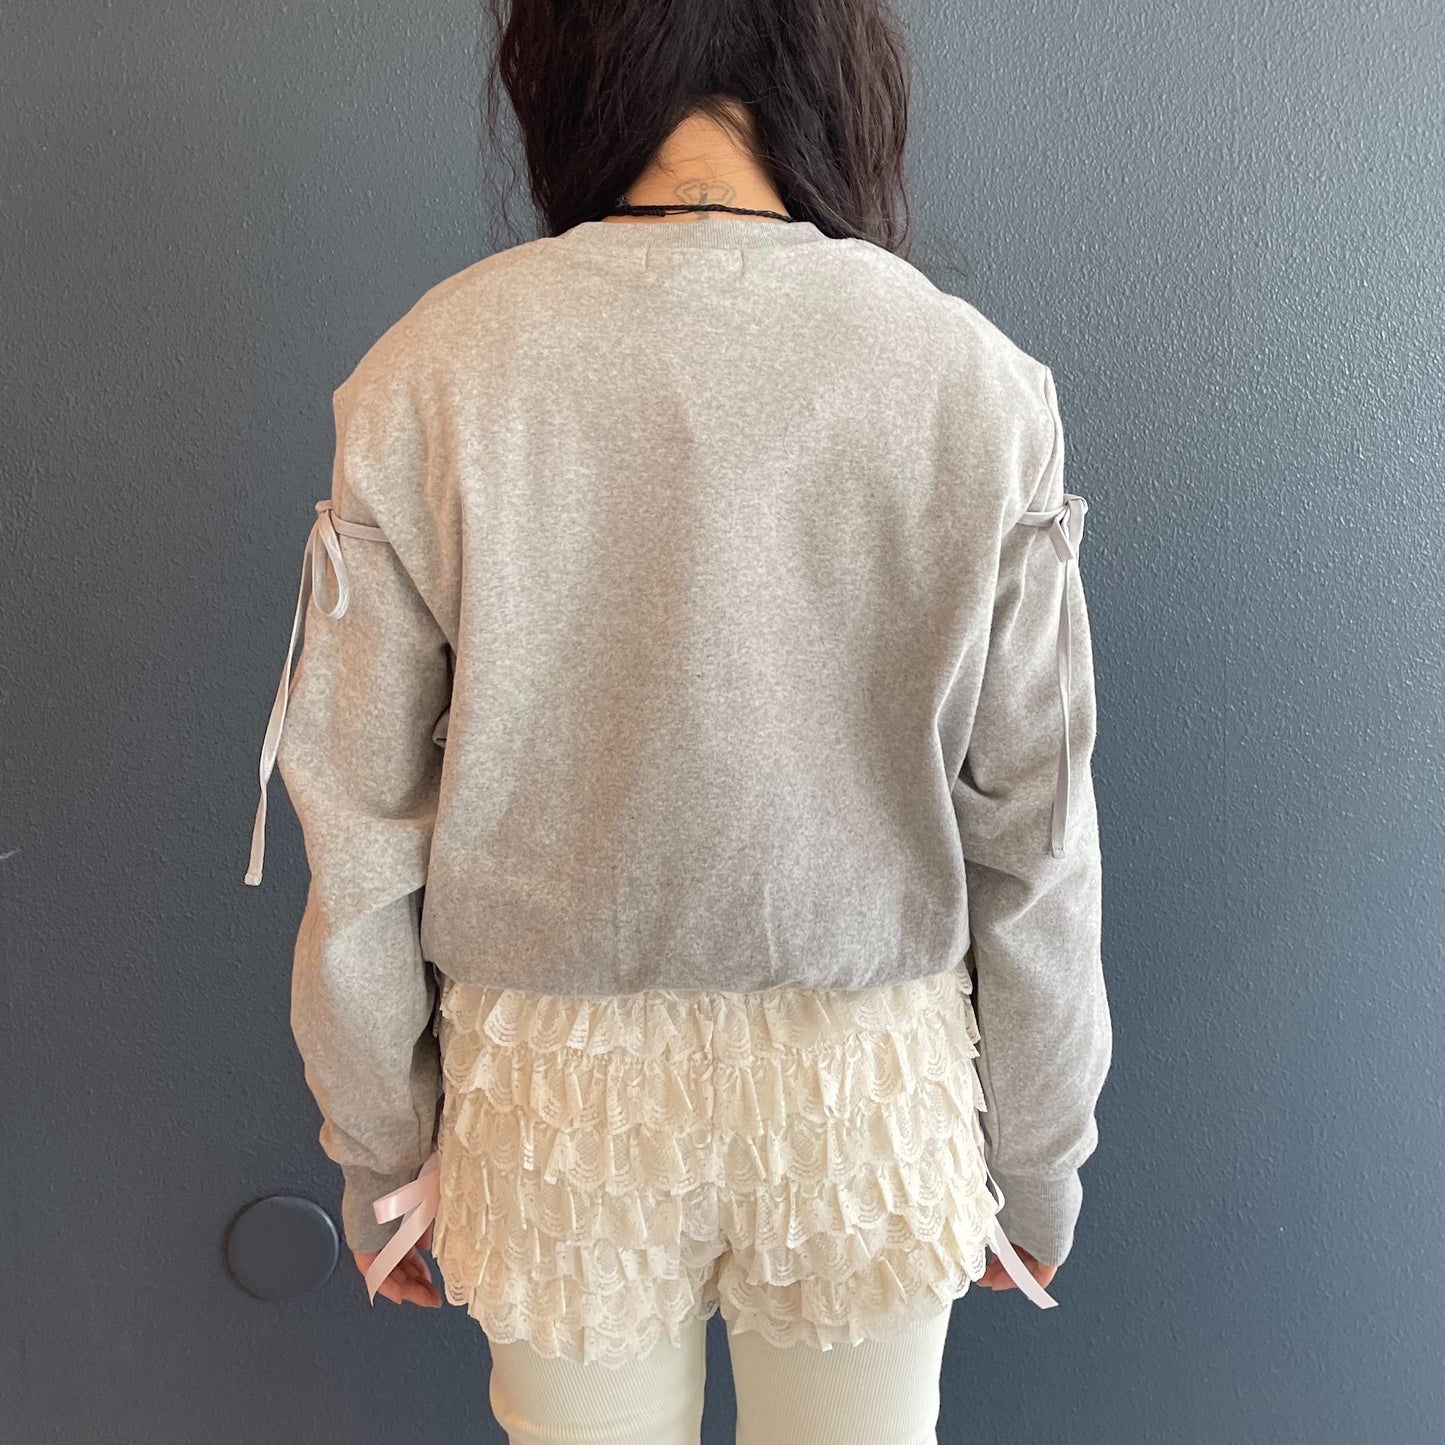 Mari ballerina sweatshirt / Gray / カッティングスウェット